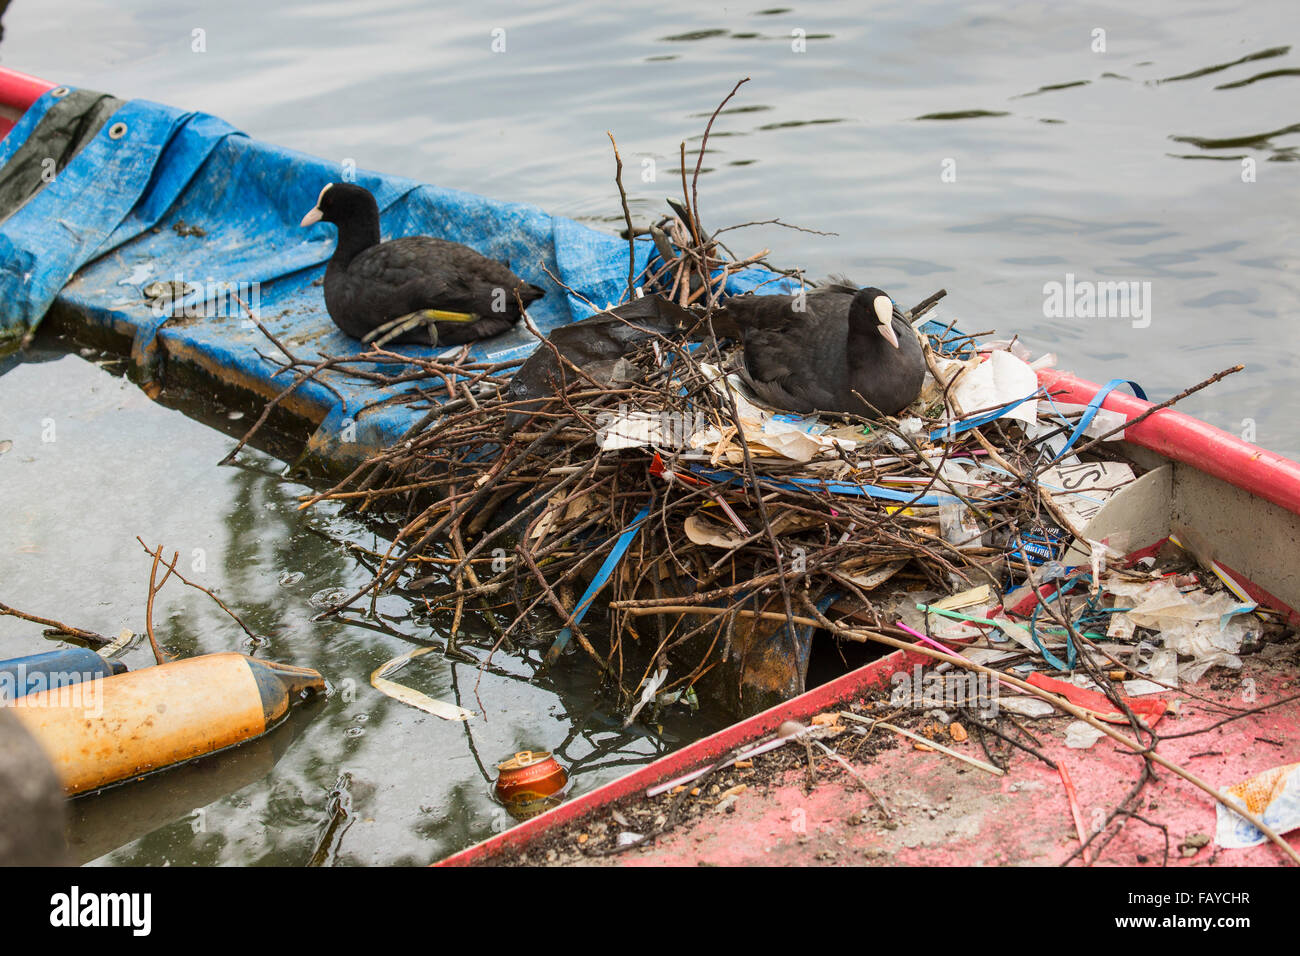 Países Bajos, Amsterdam, fochas en nido en canal en el centro de la ciudad en bote a remo hundido Foto de stock